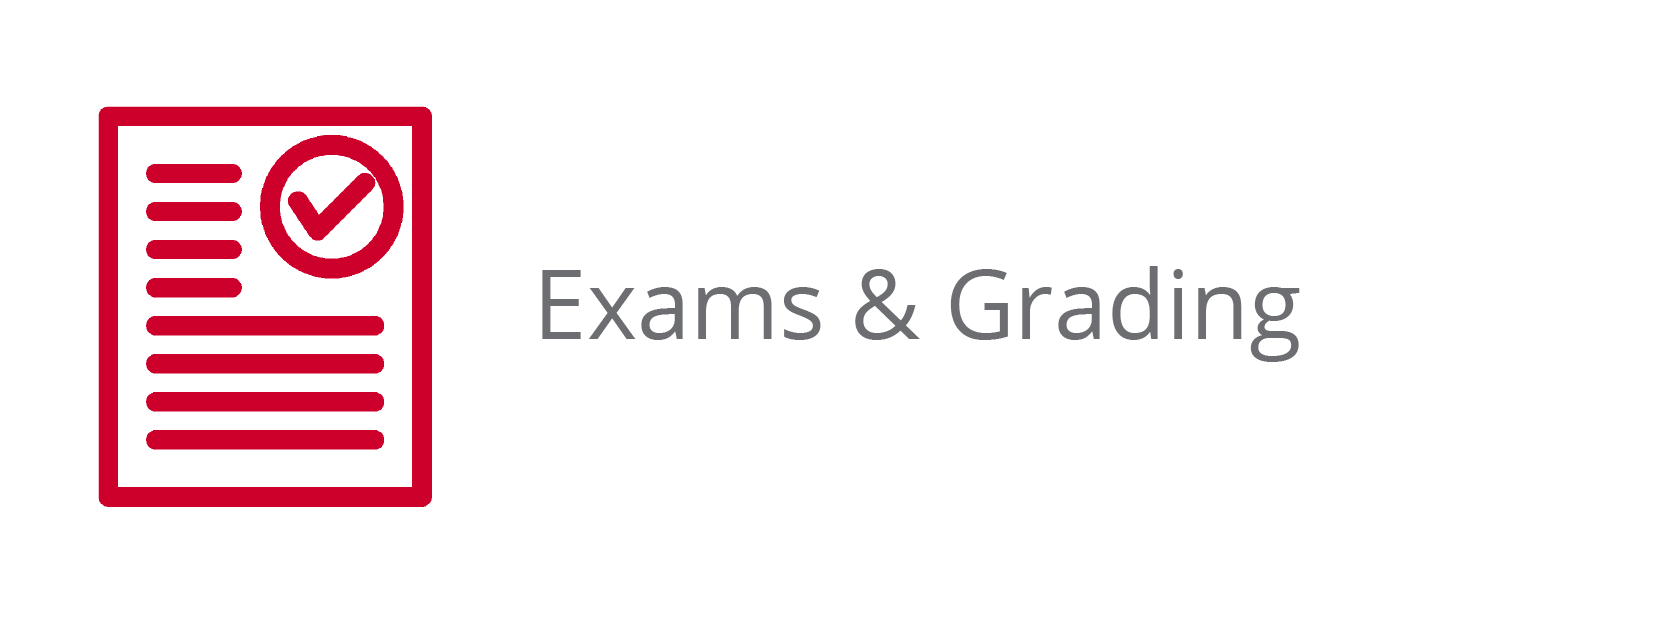 Exams & Grading Button